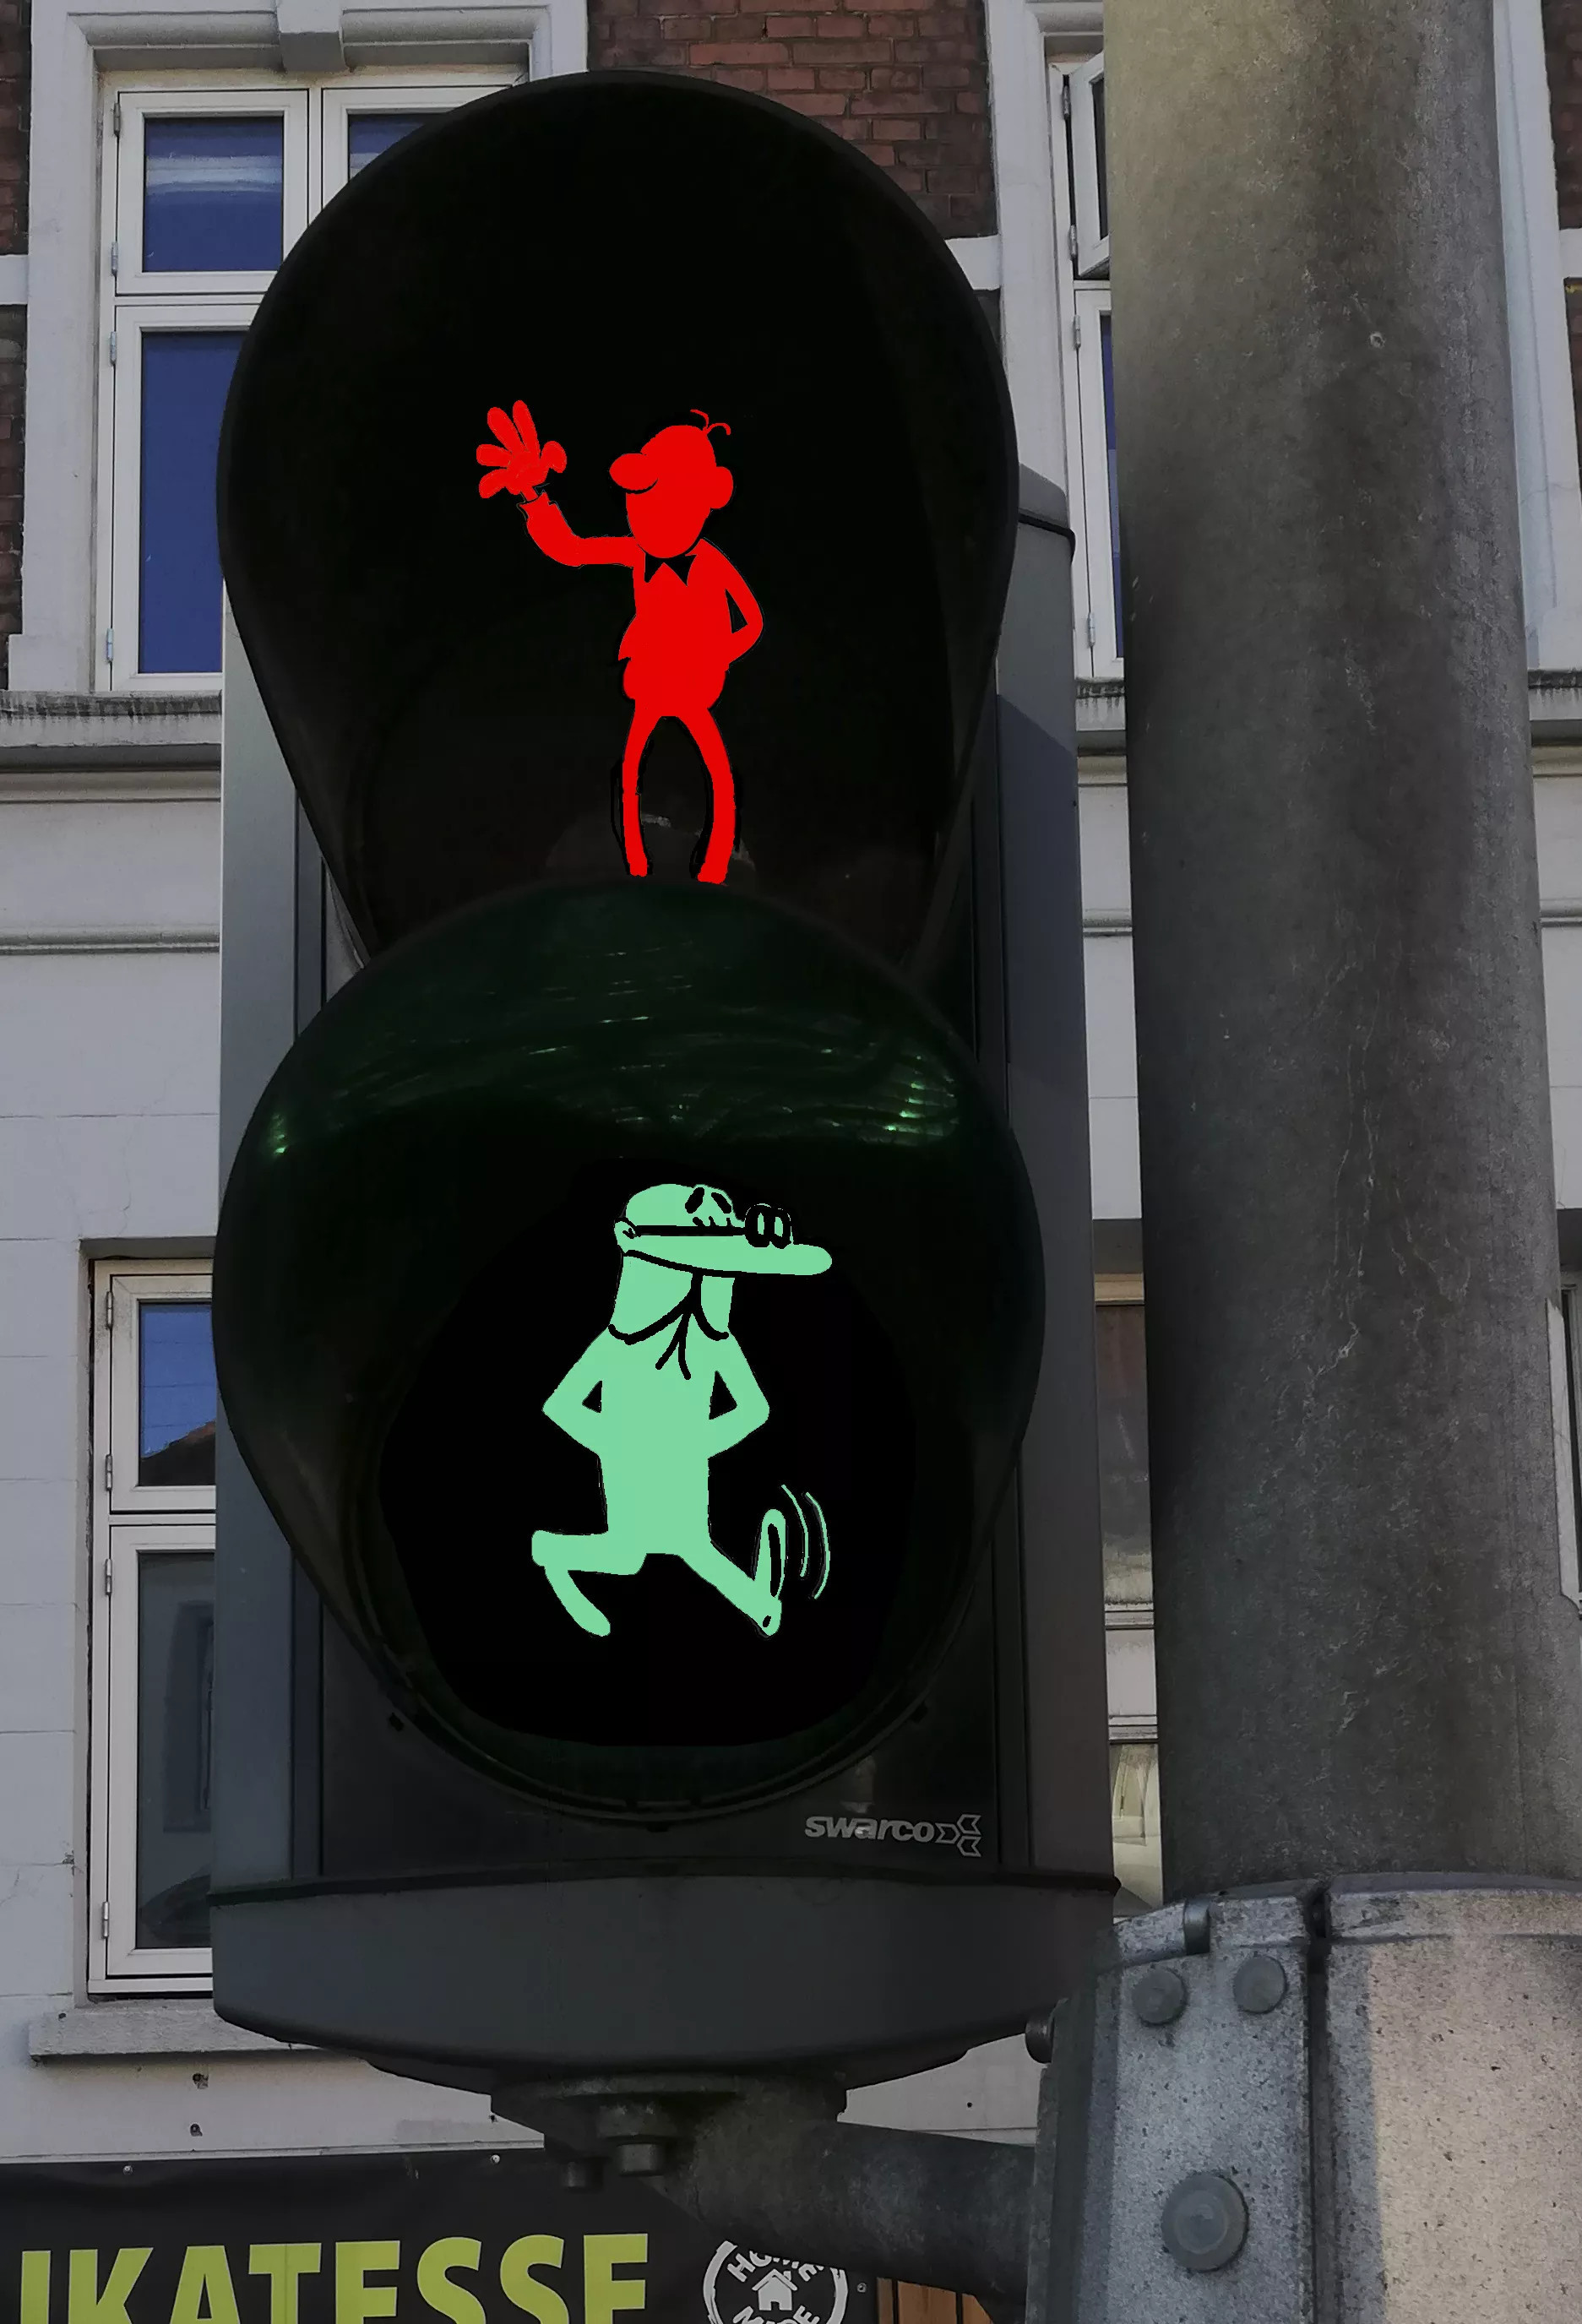 Diseño del semáforo que homenajeará a Francisco Ibáñez tras su muerte / TWITTER